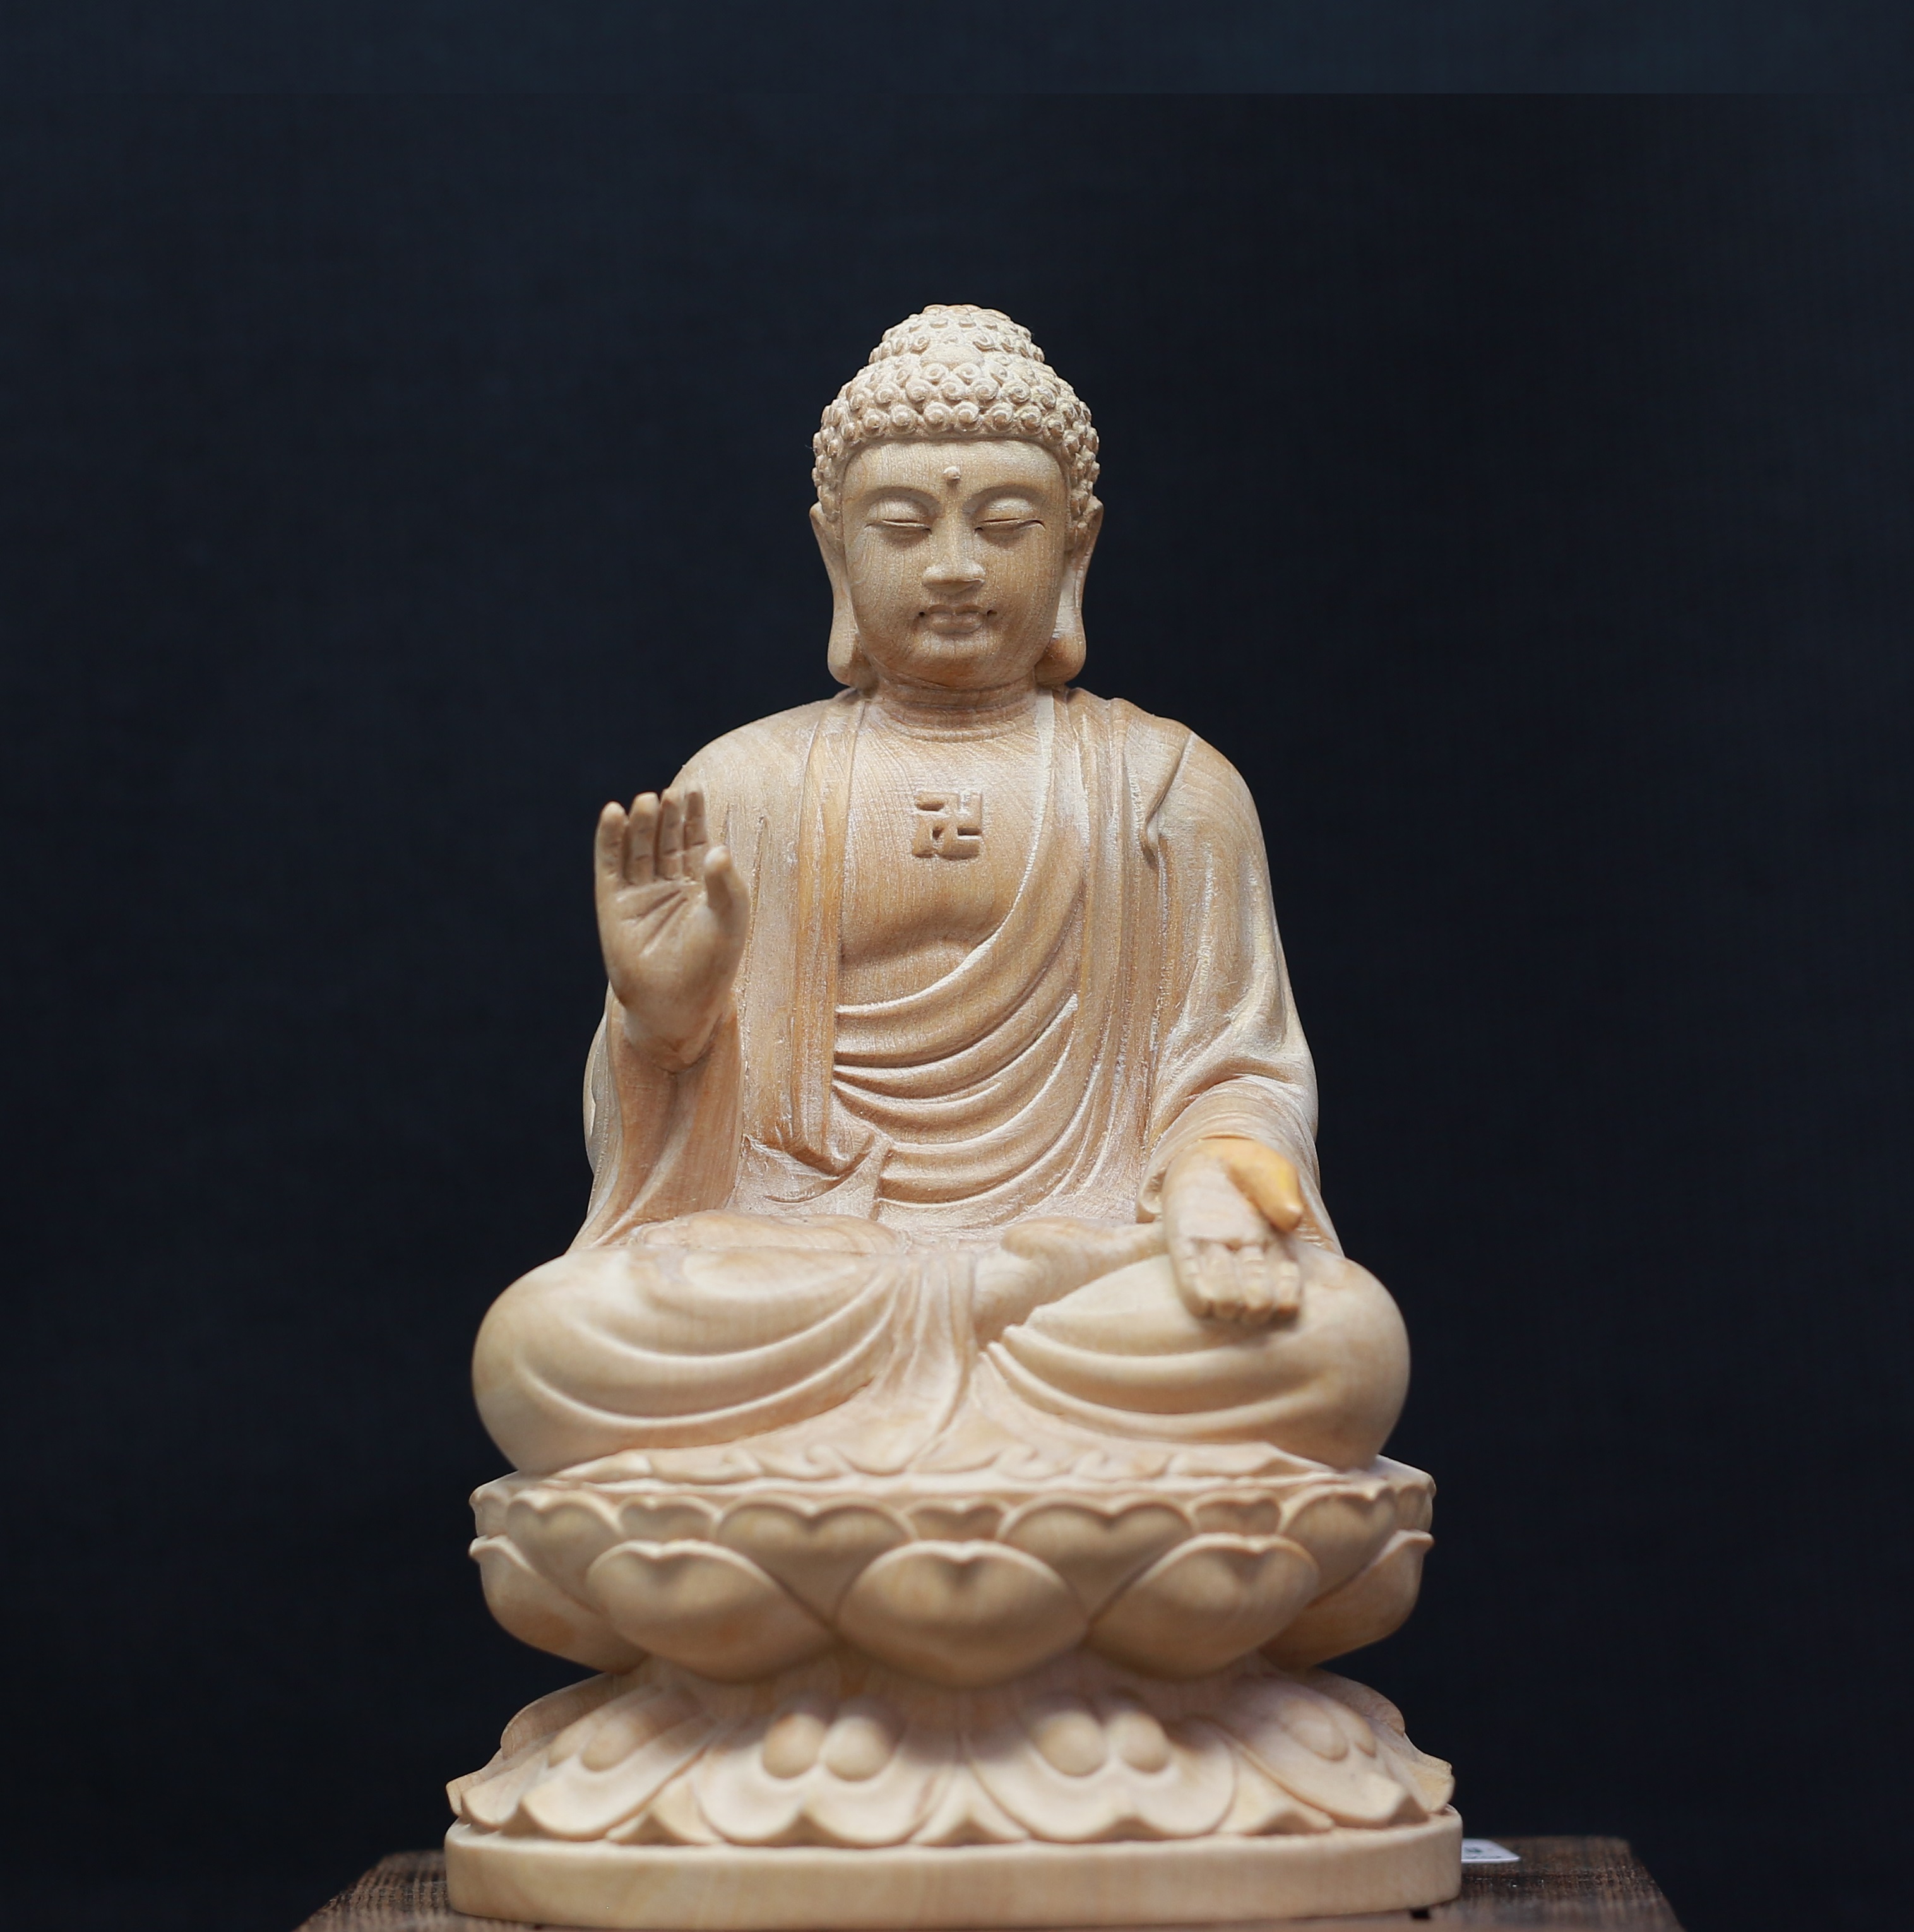 Tượng Phật A Di Đà - gỗ hoàng dương: Nét đẹp tinh tế của tượng Phật A Di Đà được kết hợp với chất liệu gỗ hoàng dương sang trọng, tạo nên một tác phẩm nghệ thuật tuyệt đẹp. Hãy để cho tượng Phật A Di Đà - gỗ hoàng dương đem lại cho bạn lòng bình an và sự giàu có tinh thần.